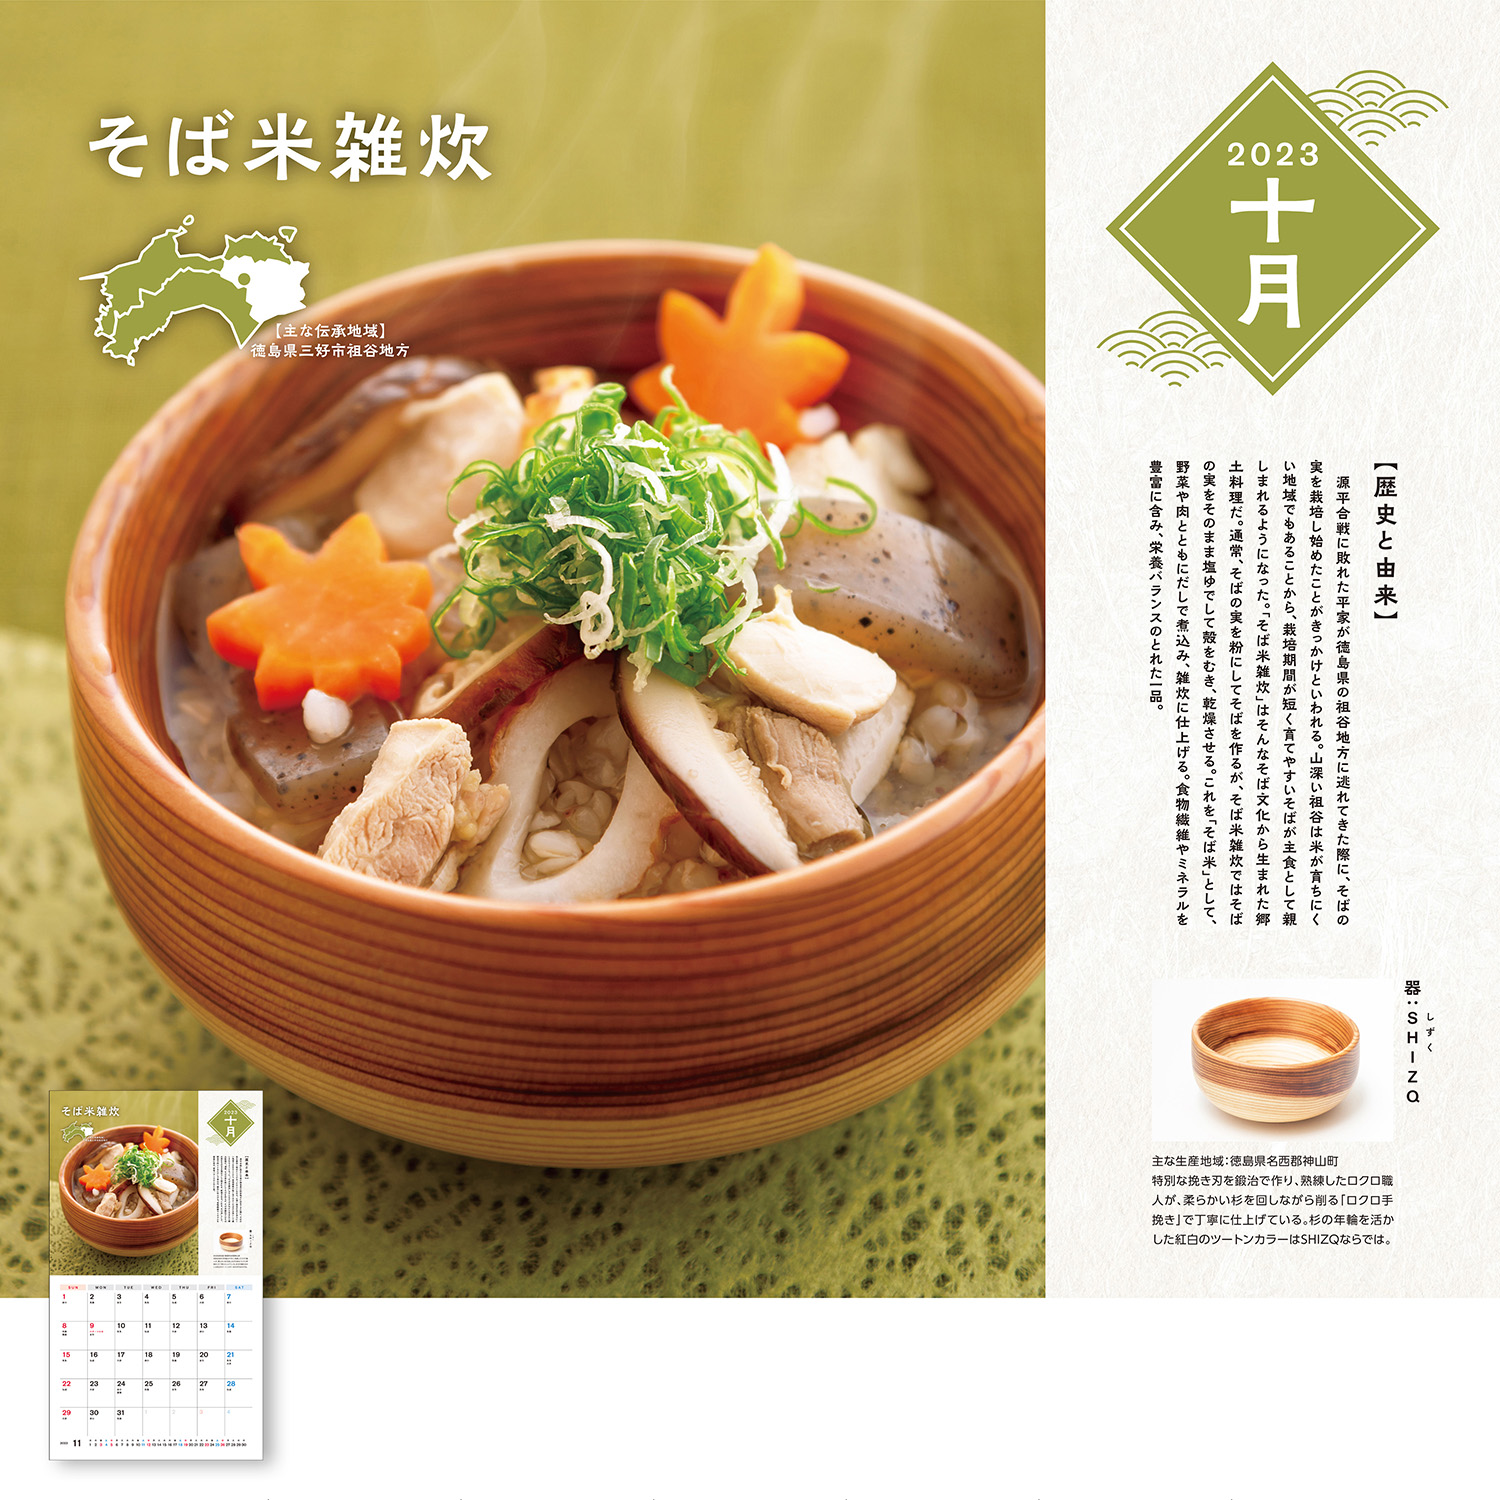 四国ガス2023年カレンダー10月のページでしずくの器に入ったそば米雑炊